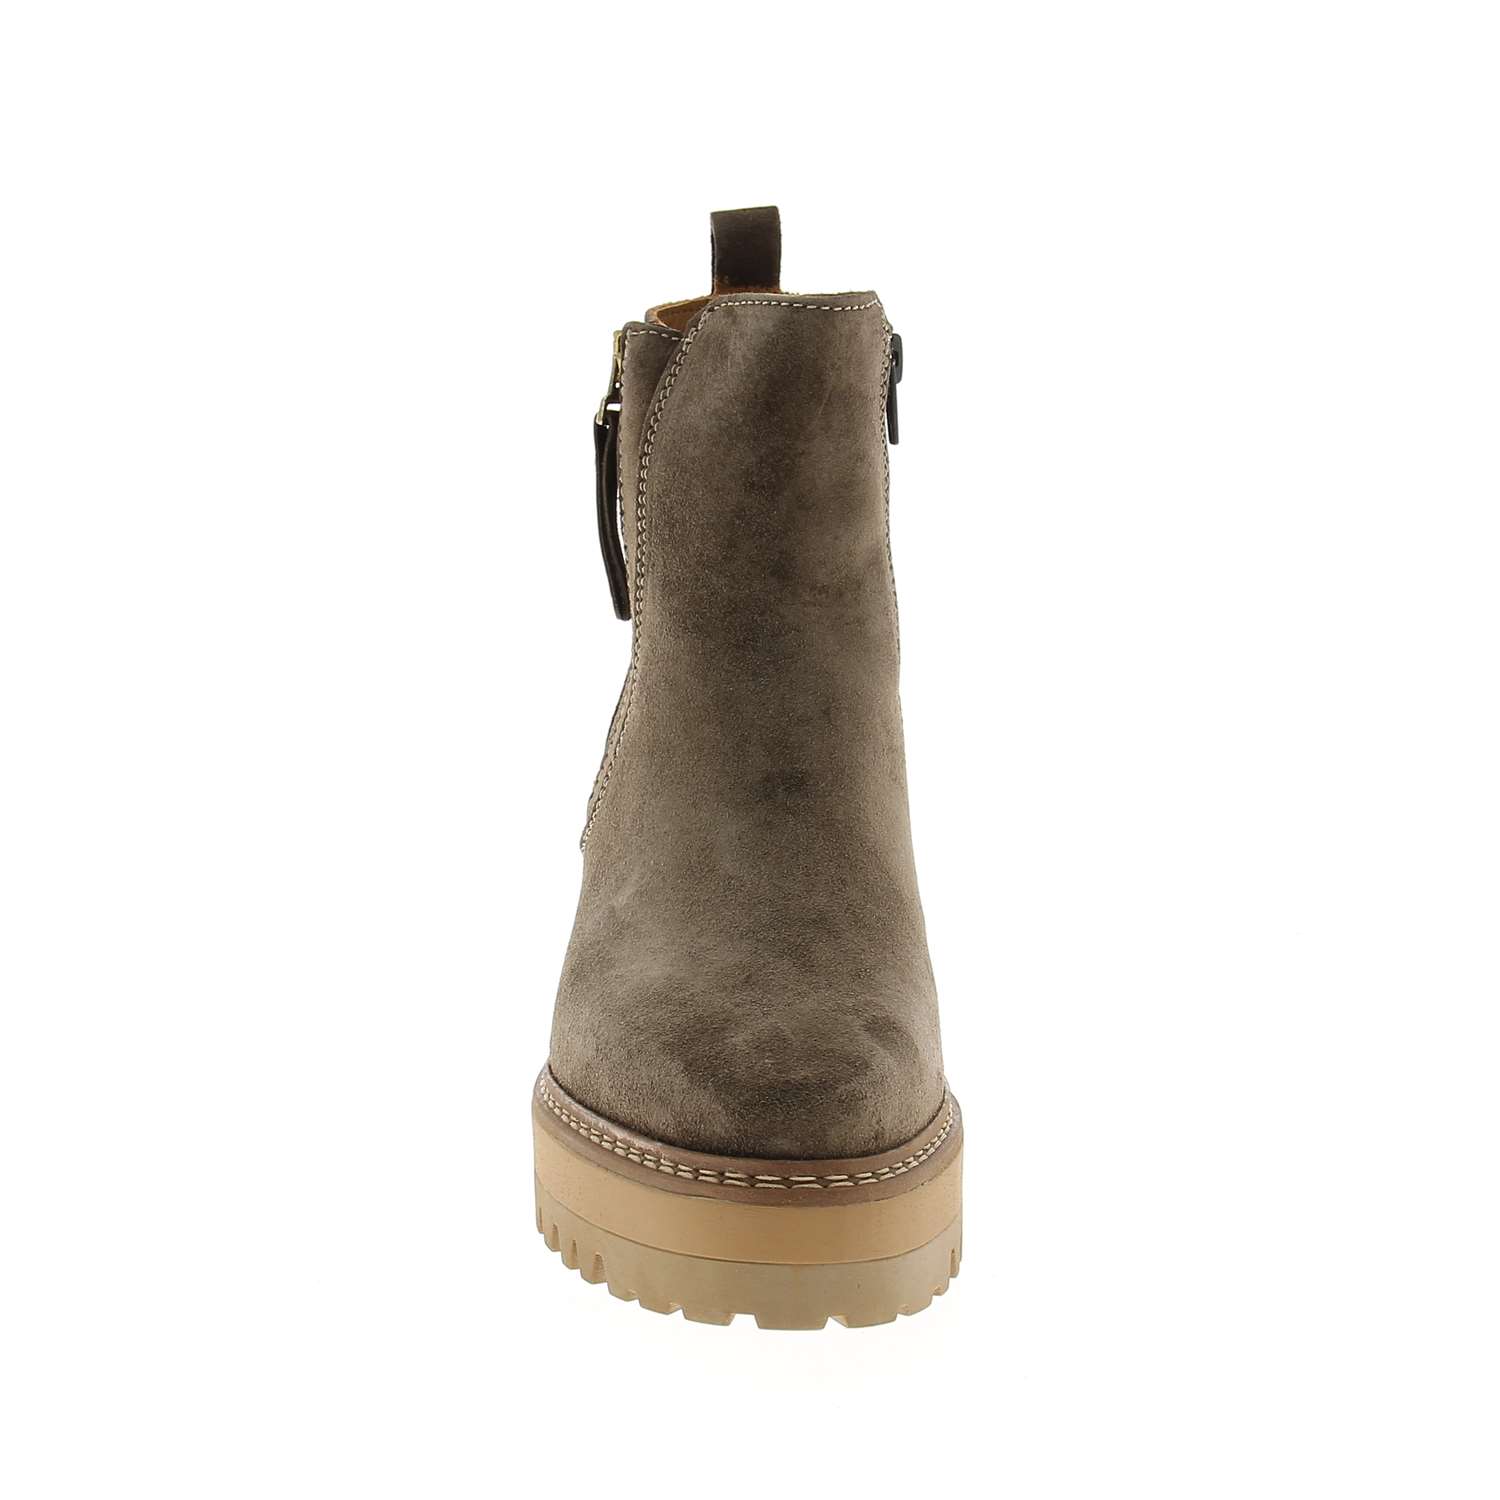 03 - AMARO - ALPE - Boots et bottines - Croûte de cuir